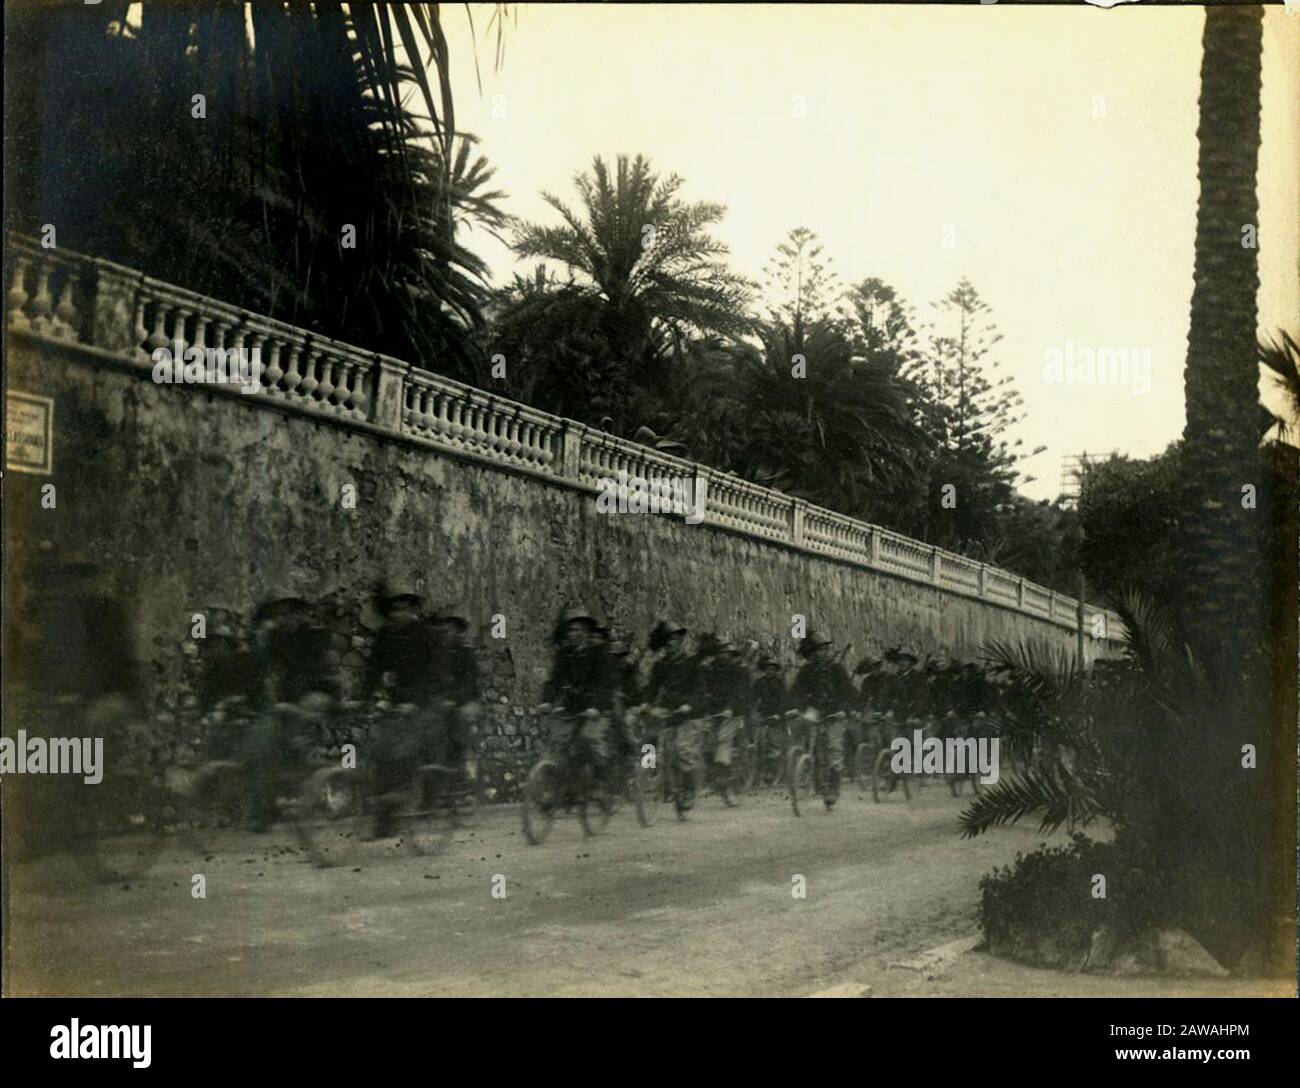 1912, IMPERIA, ITALIEN: SANREMO - SAN REMO, italienische Soldaten BERSAGLIERI auf dem Fahrrad . Foto von einem französischen Touristen aufgenommen. - ITALIEN - FOTO STORICHE Stockfoto